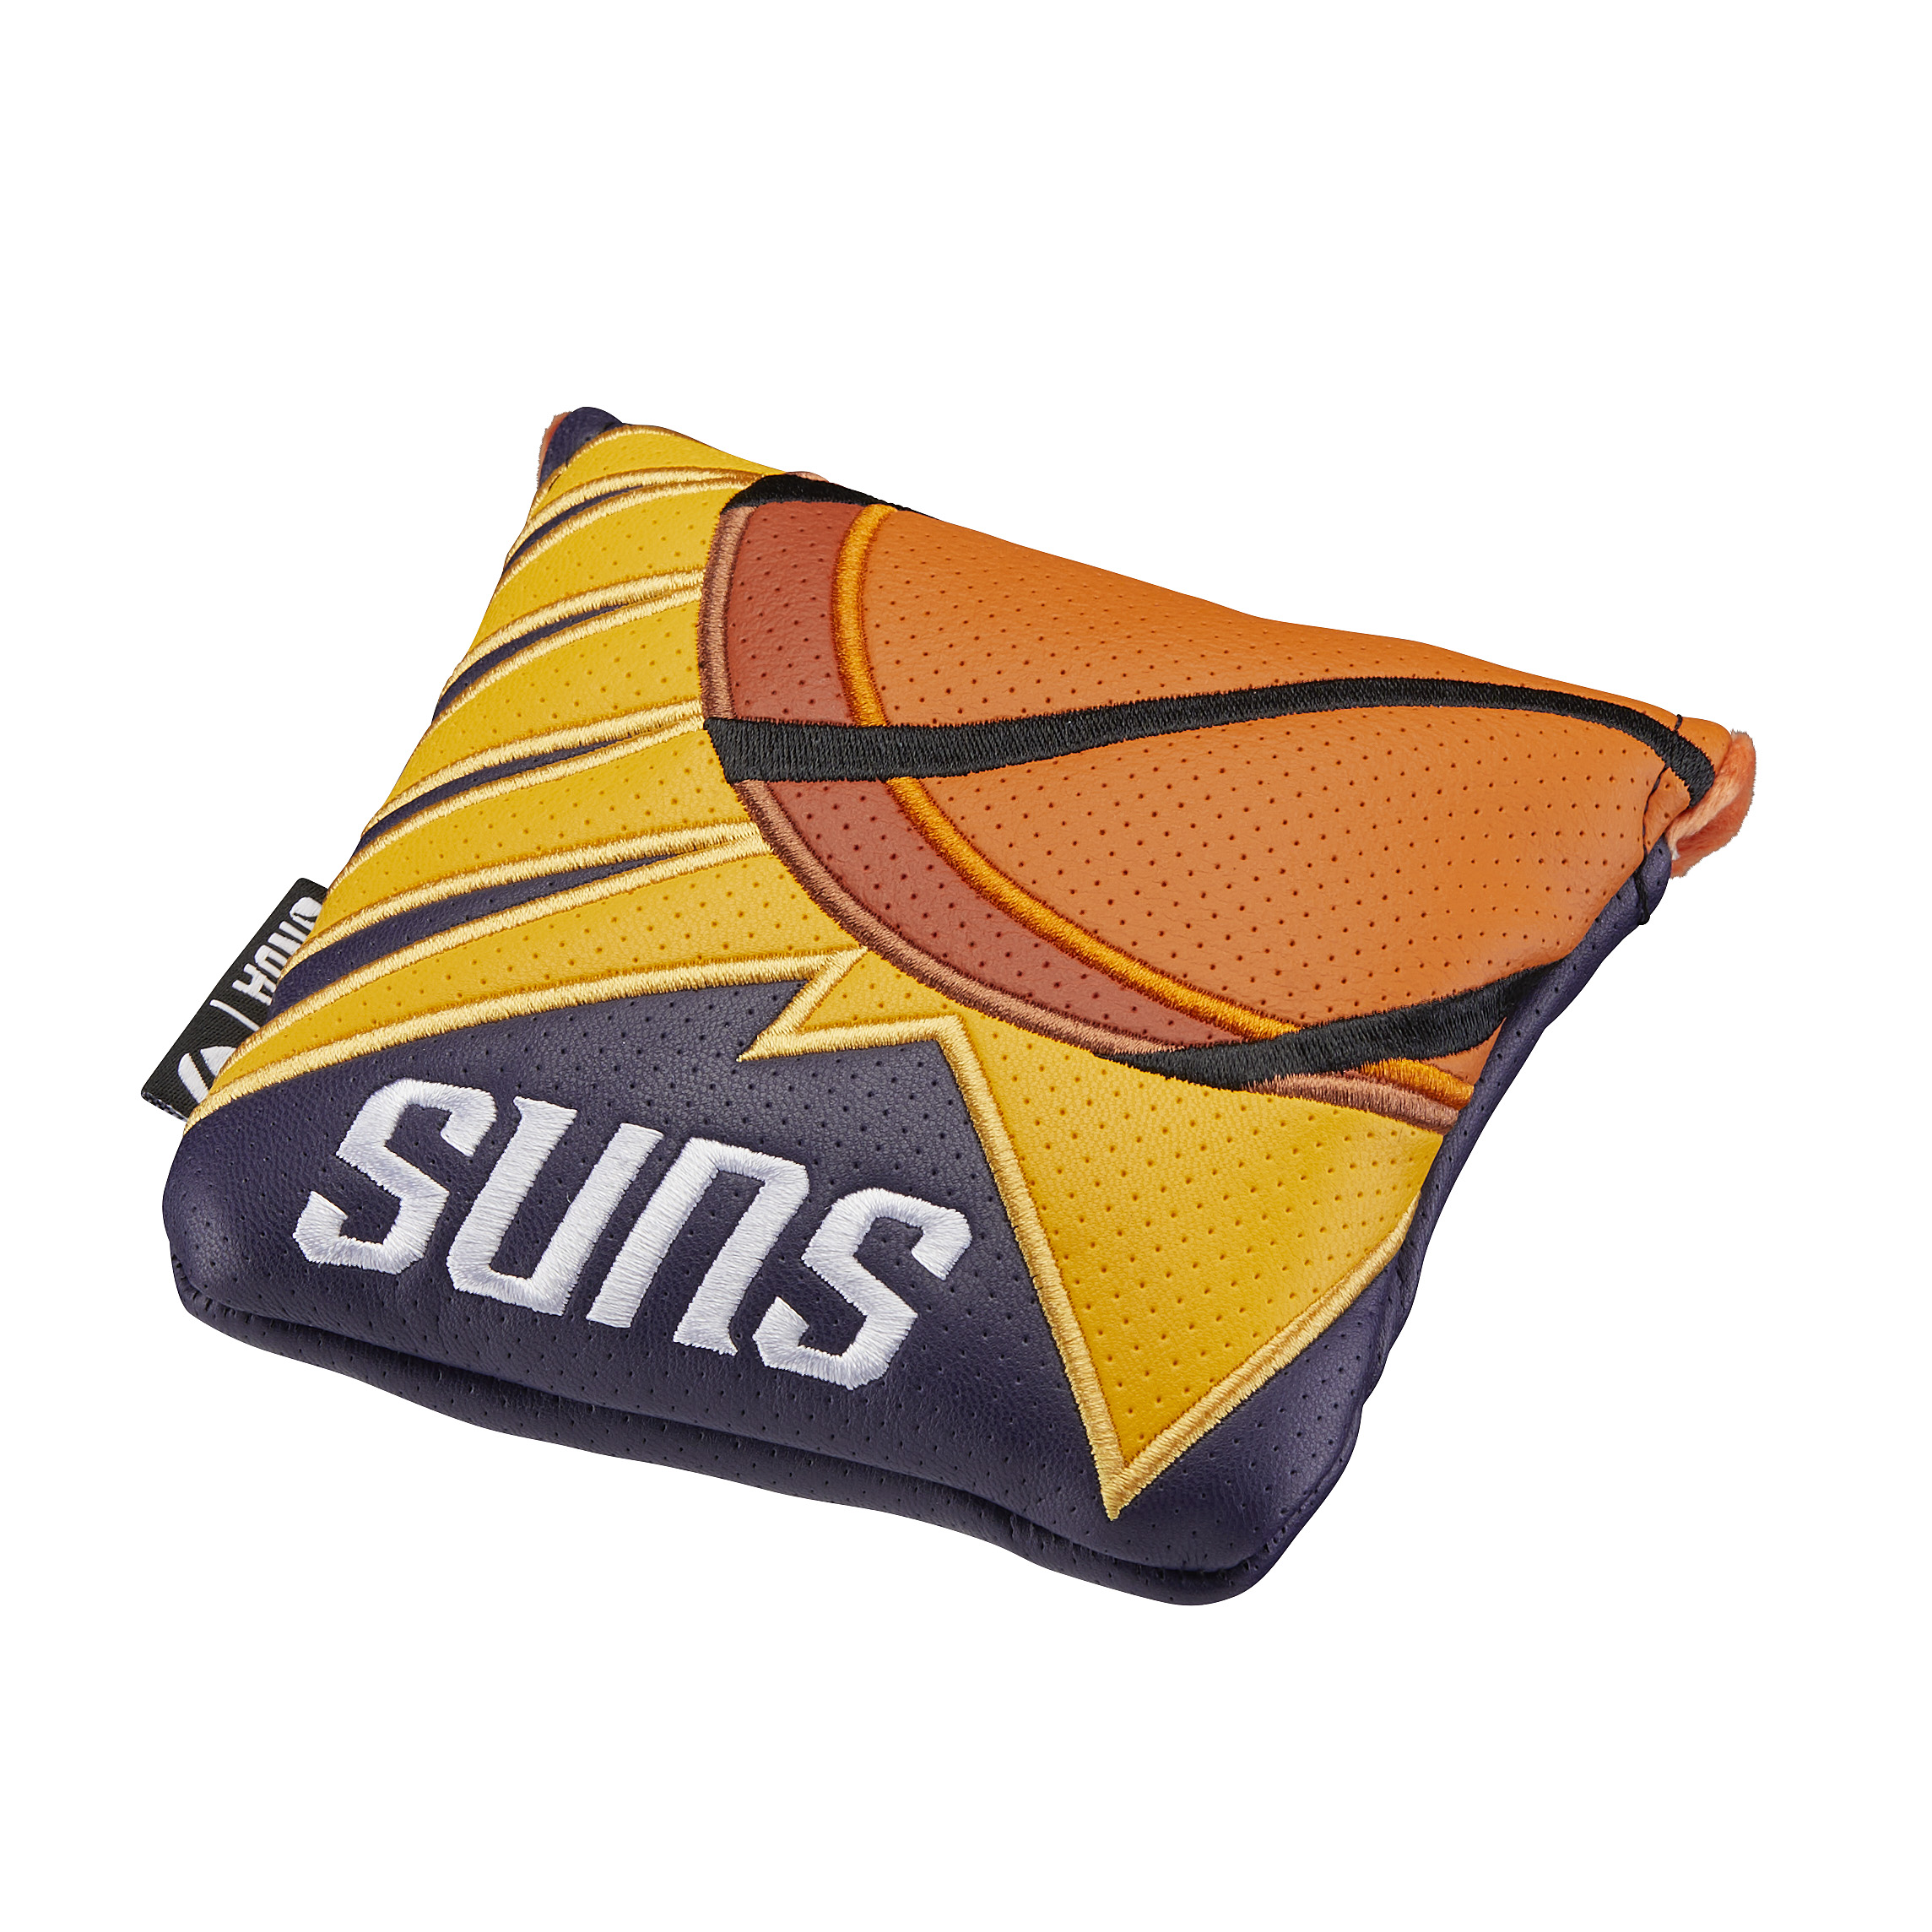 Phoenix Sunsスパイダーヘッドカバー /の画像